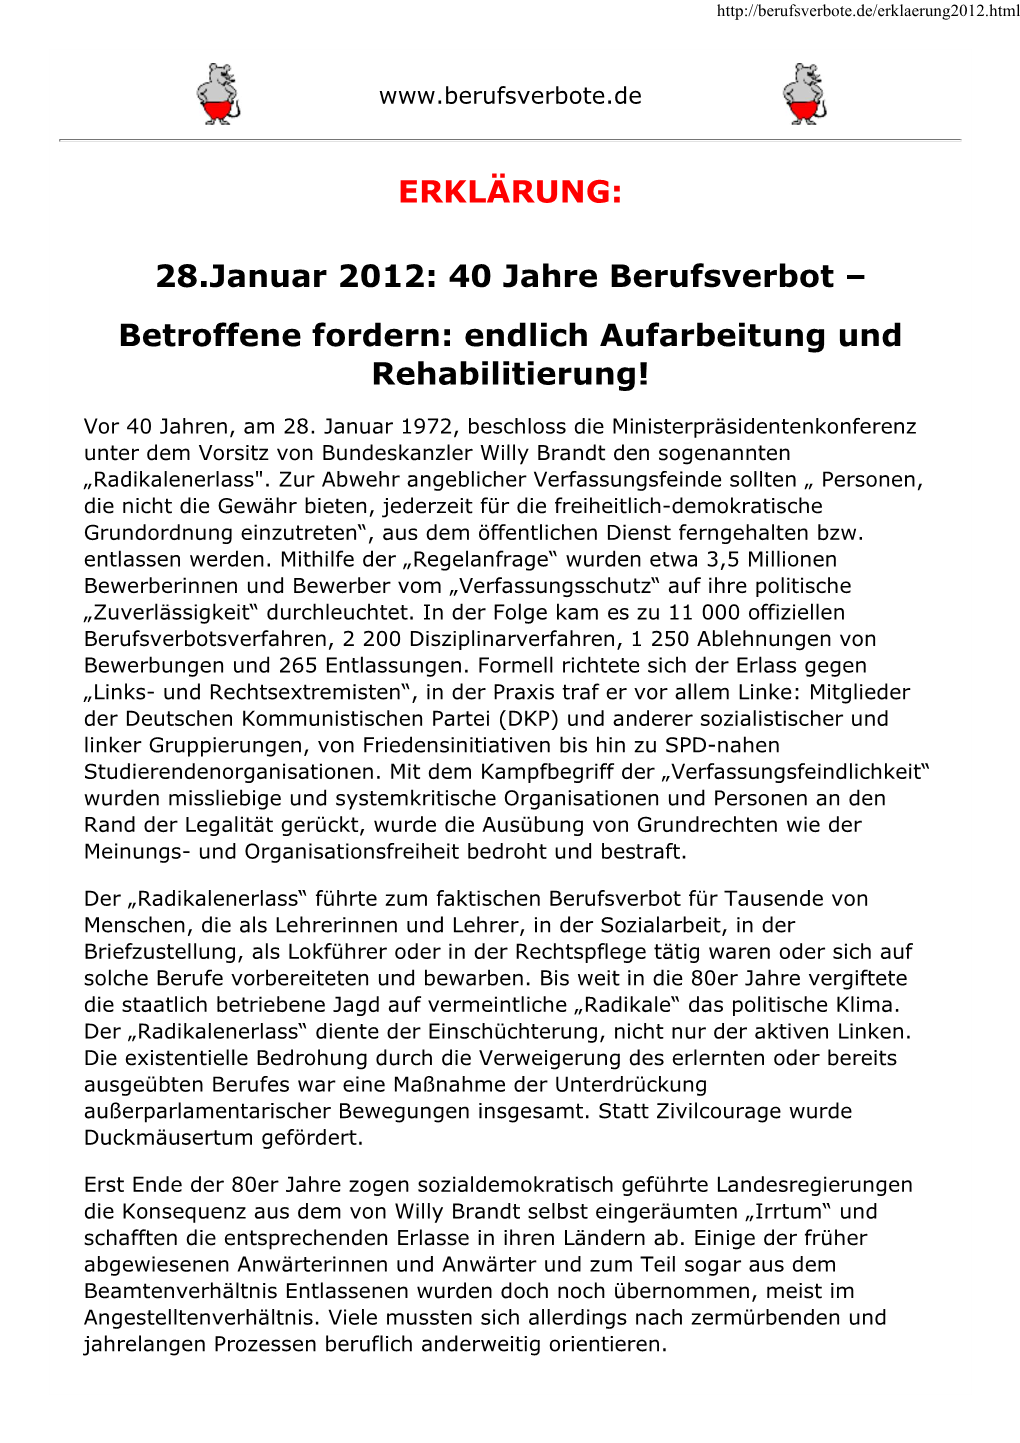 28.Januar 2012: 40 Jahre Berufsverbot – Betroffene Fordern: Endlich Aufarbeitung Und Rehabilitierung!